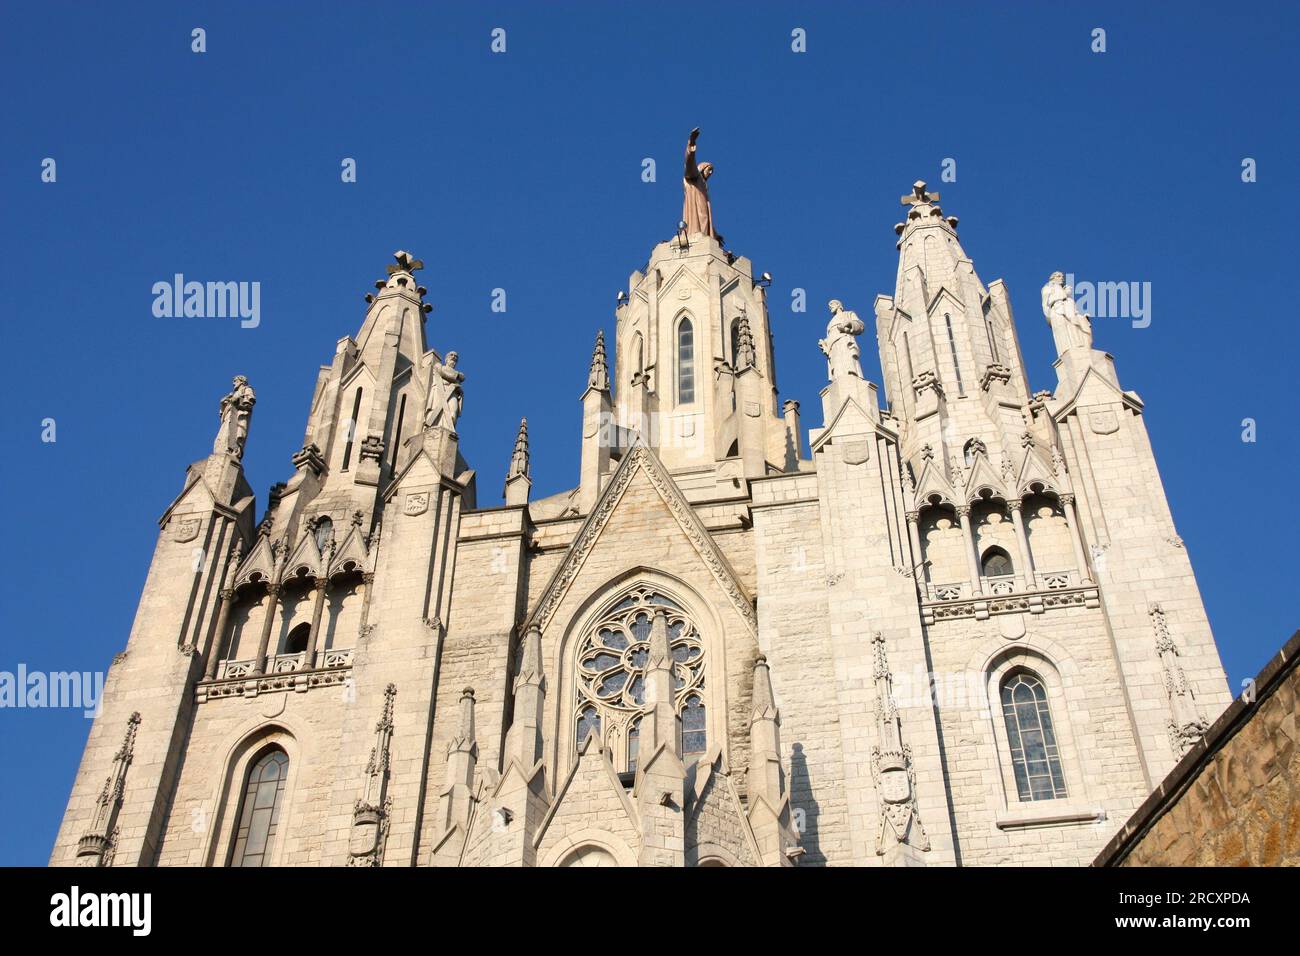 Tibidabo hill in Barcelona, Spain. Sacred Heart Church facade. Stock Photo